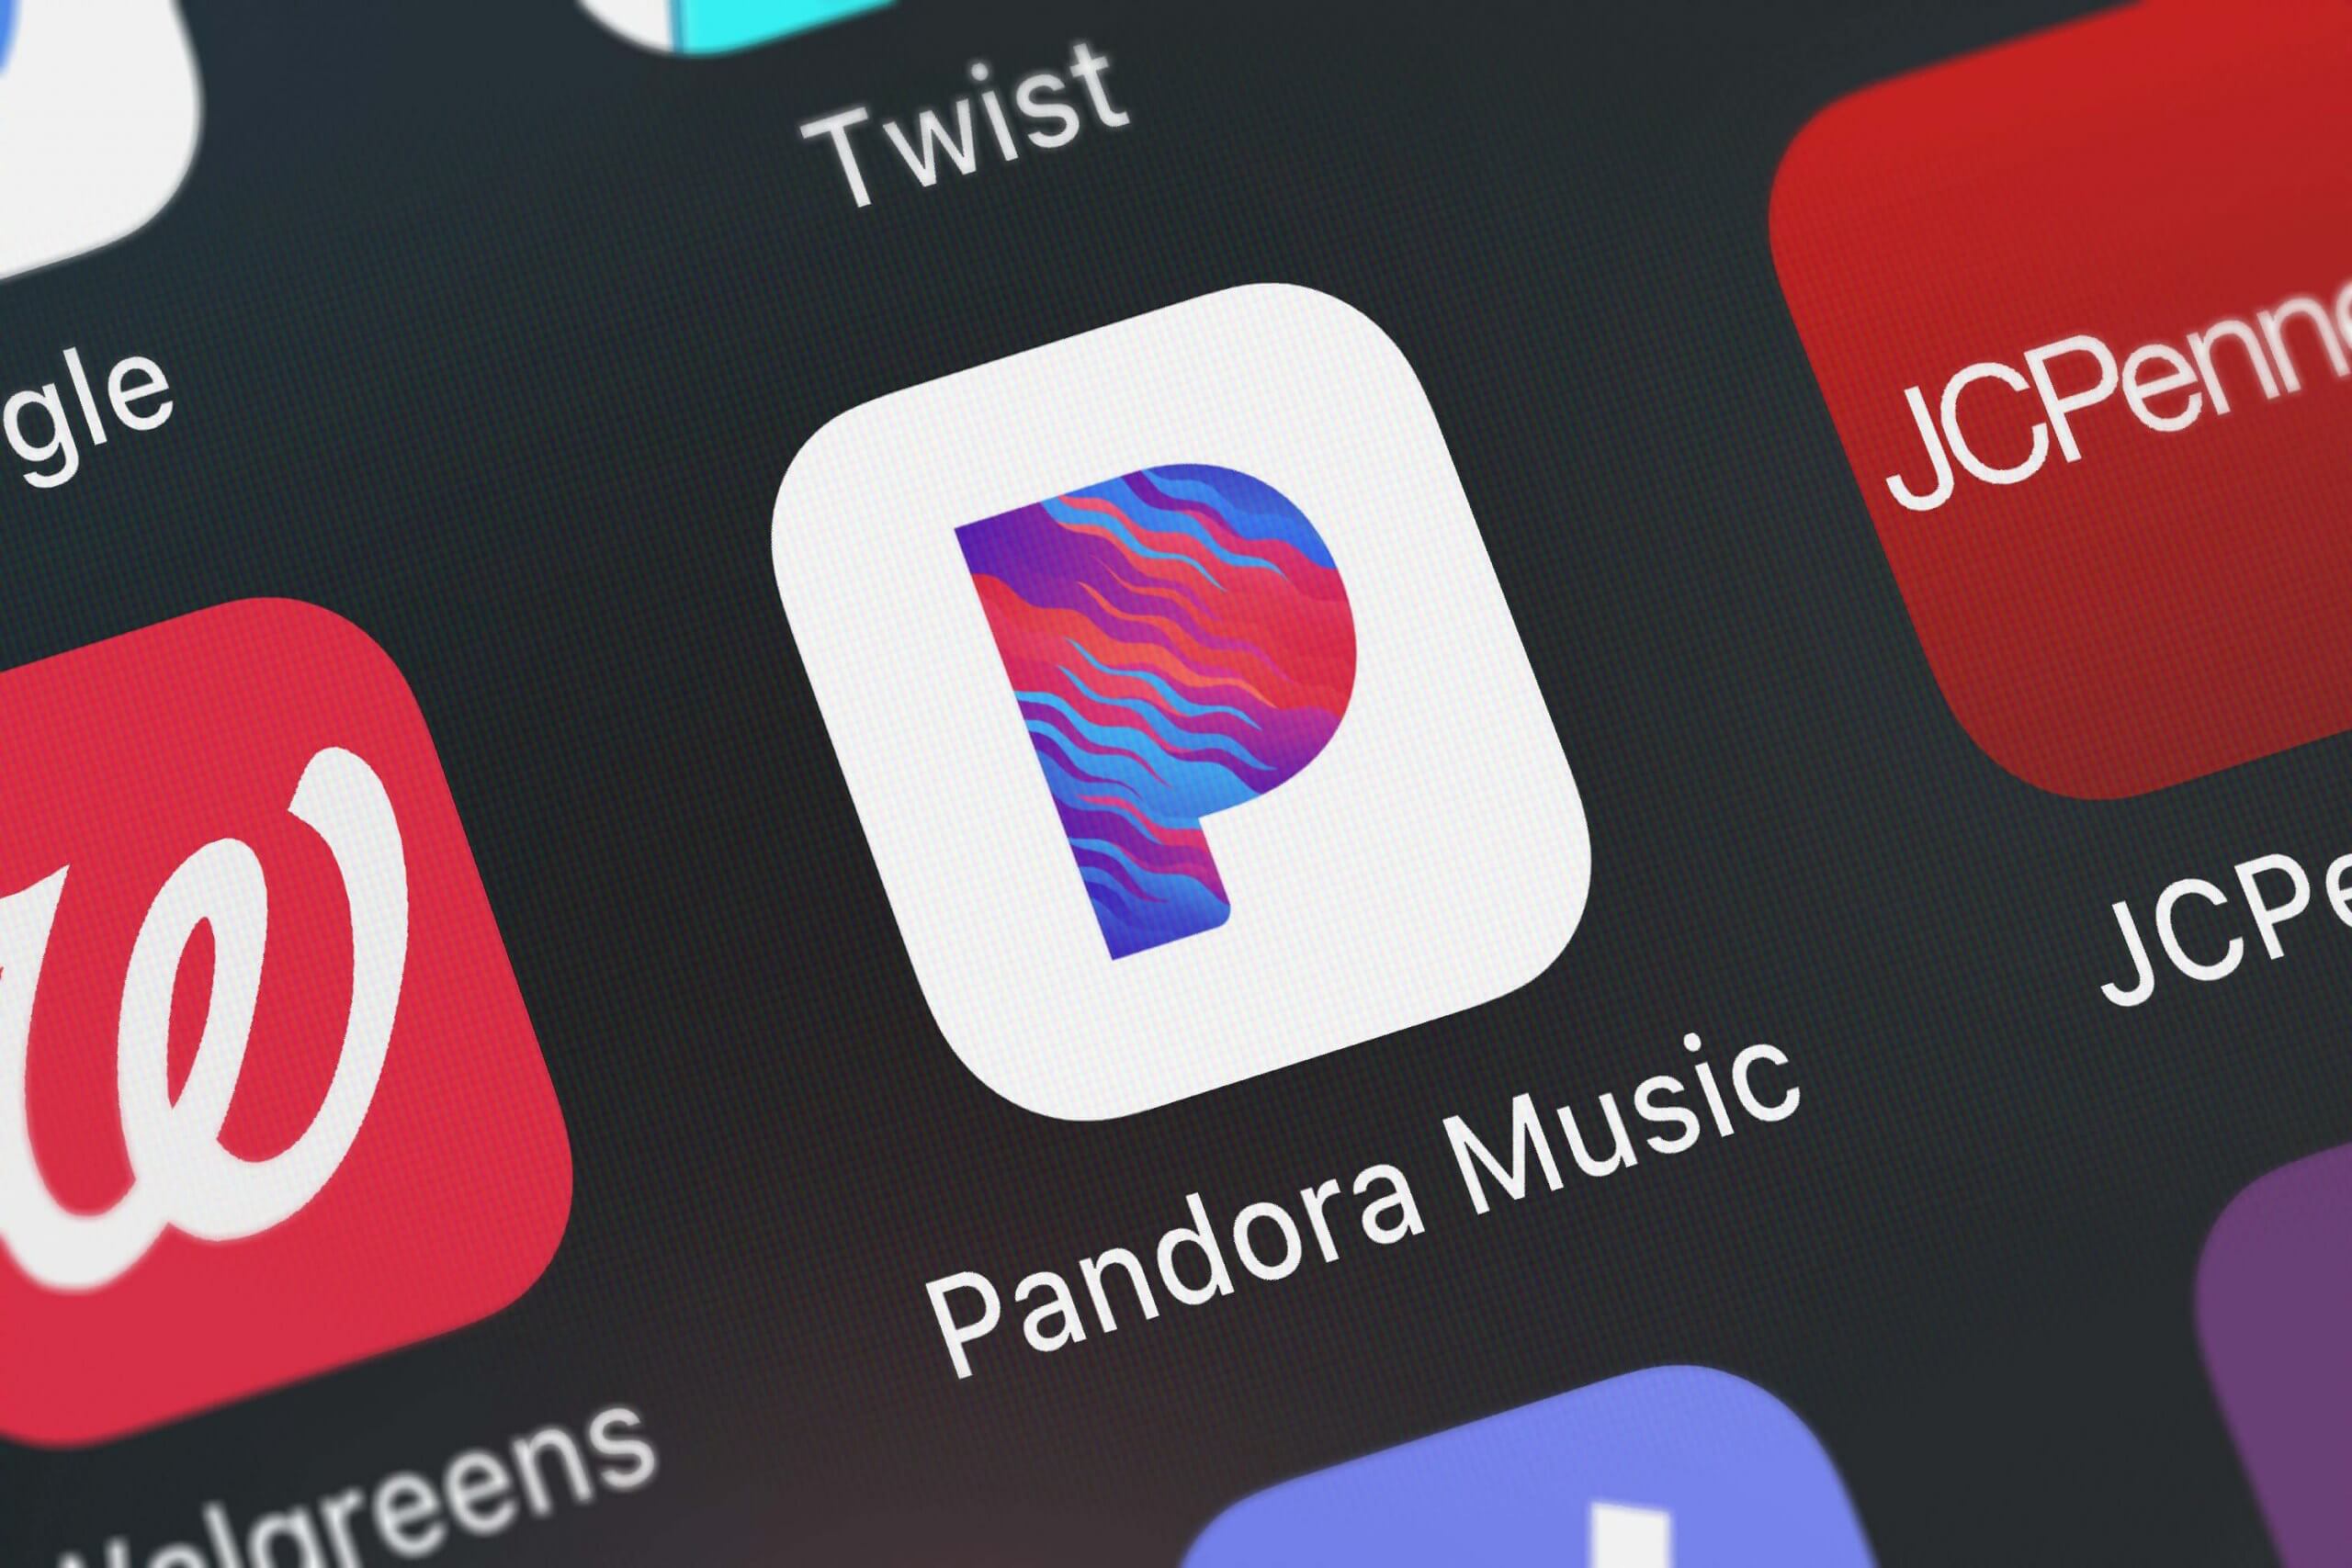 Pandora faces copyright lawsuit for displaying song lyrics